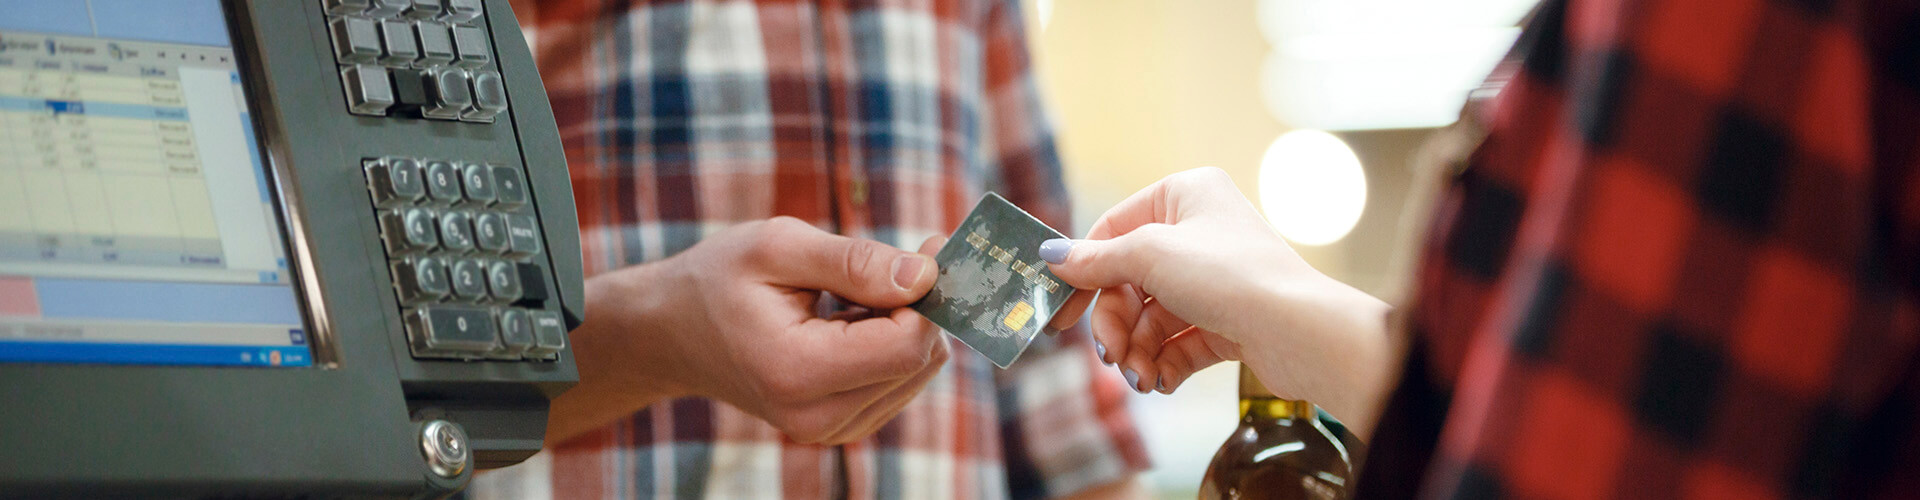 TPV Fijo - Hombre dando una tarjeta de credito a una cajera en un supermercado junto a un tpv